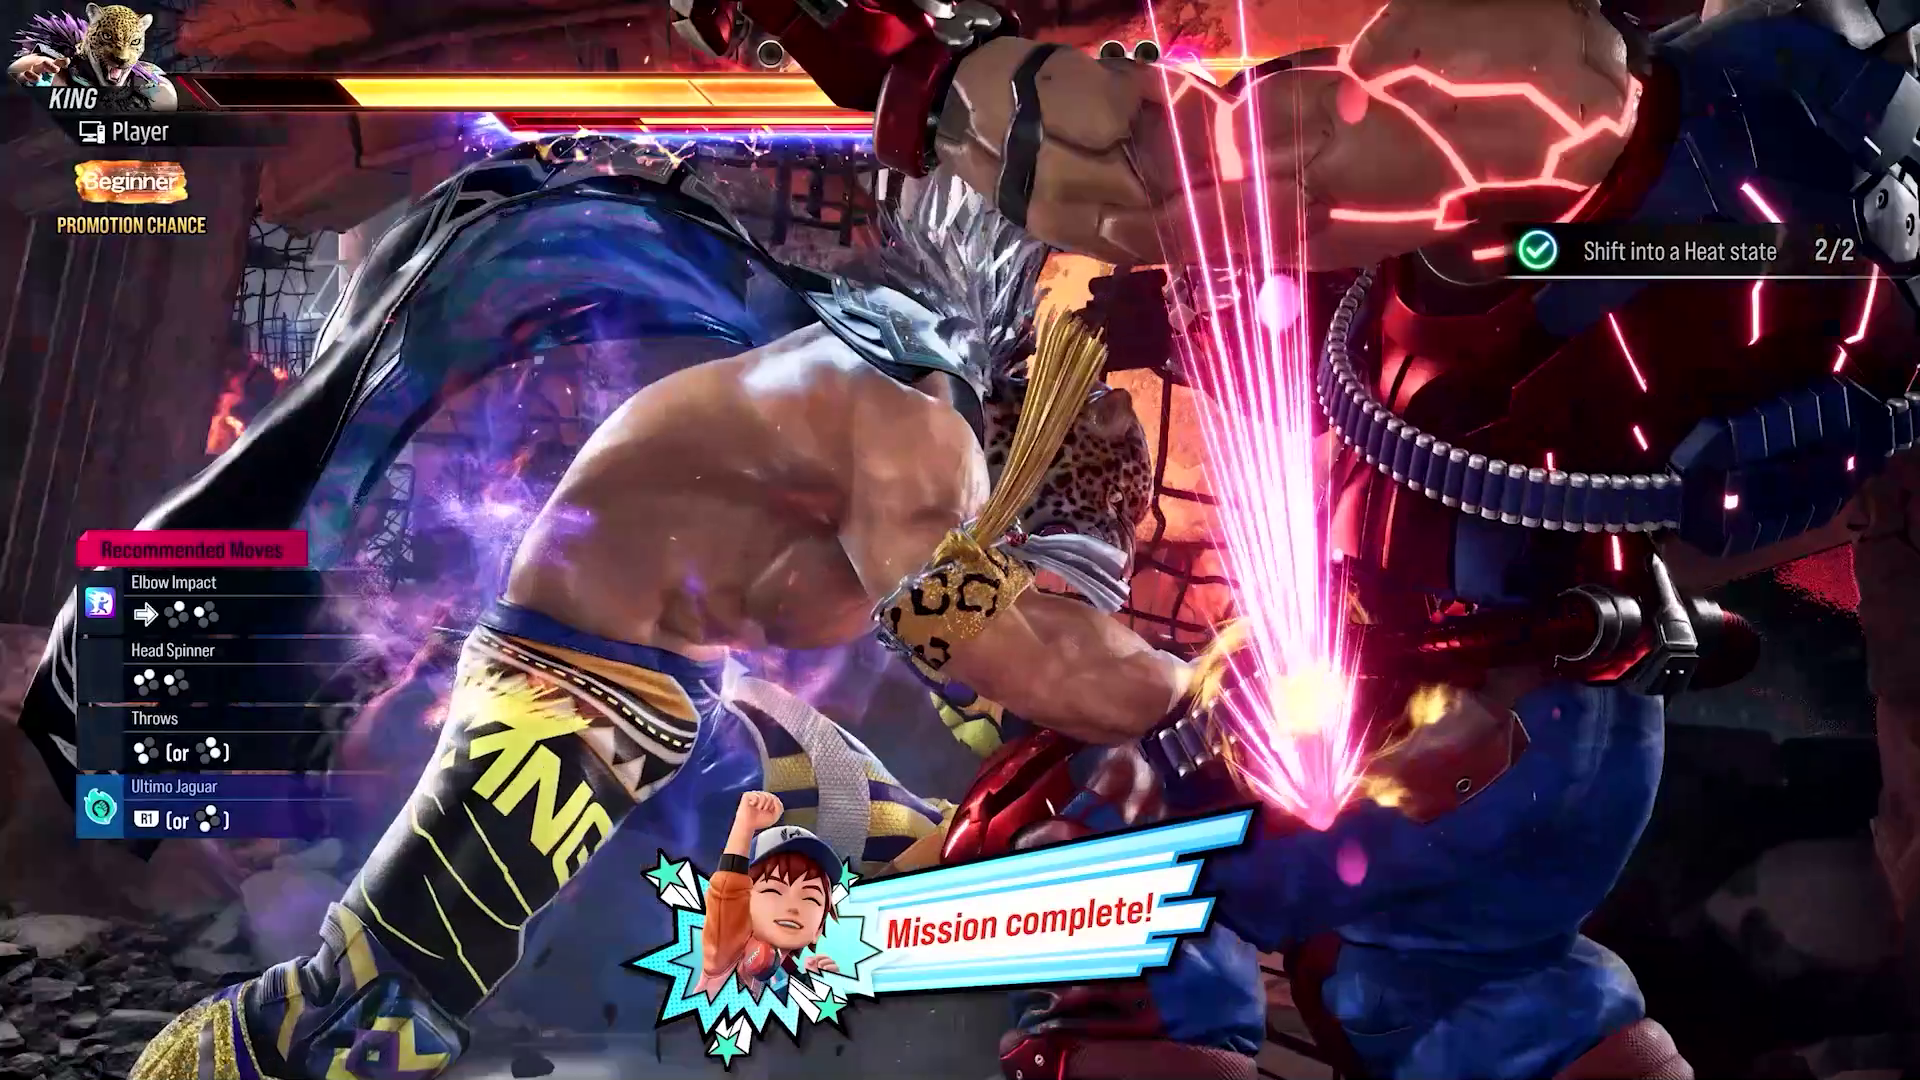 Capture d'écran de Tekken 8 montrant deux combattants s'affrontant en mode Arcade Quest